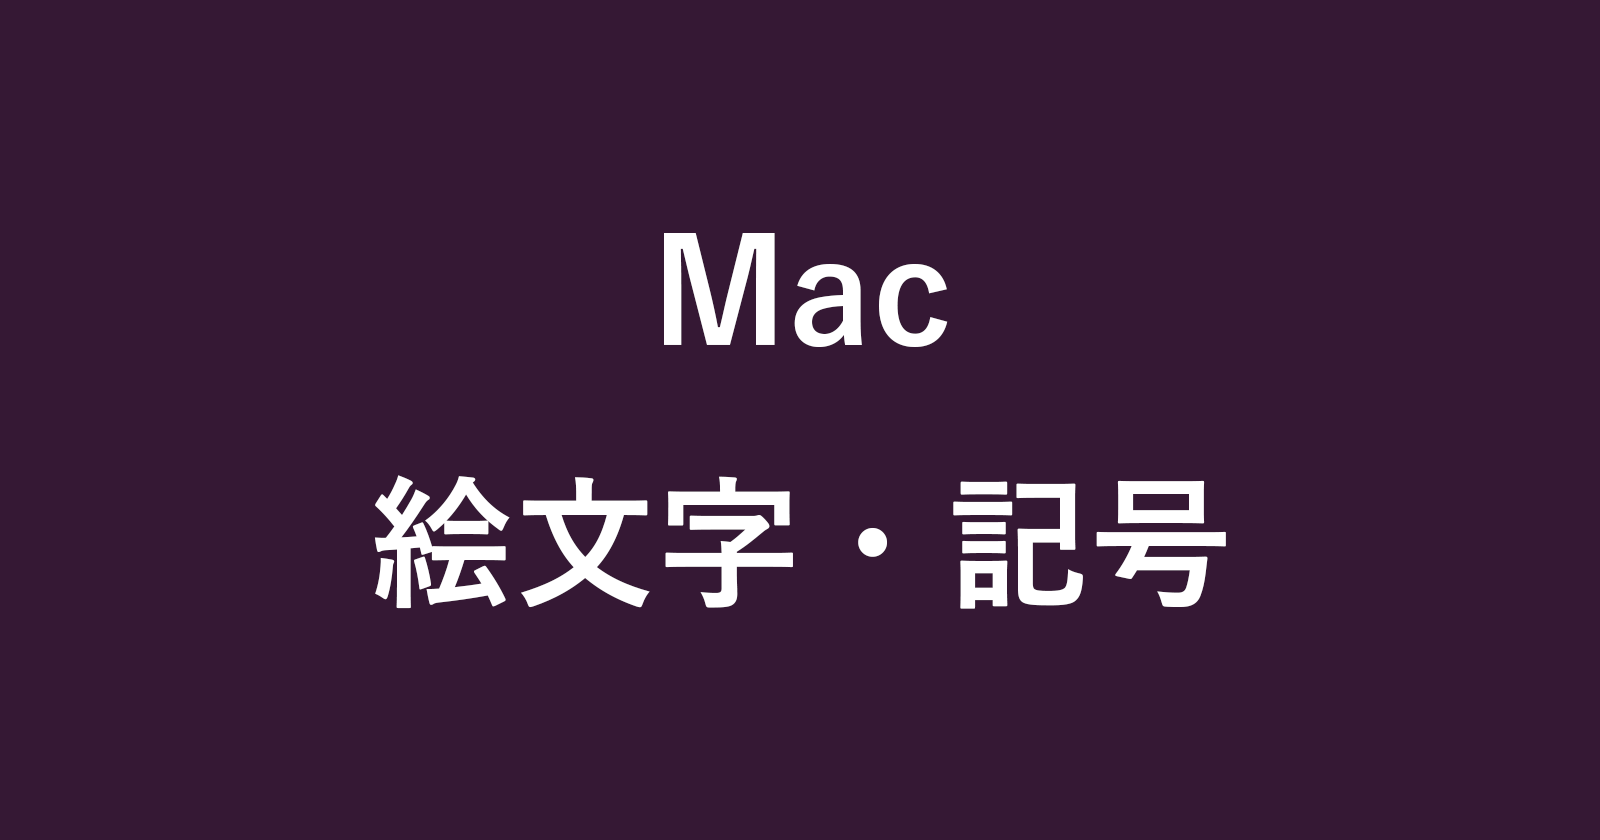 mac emoji symbols